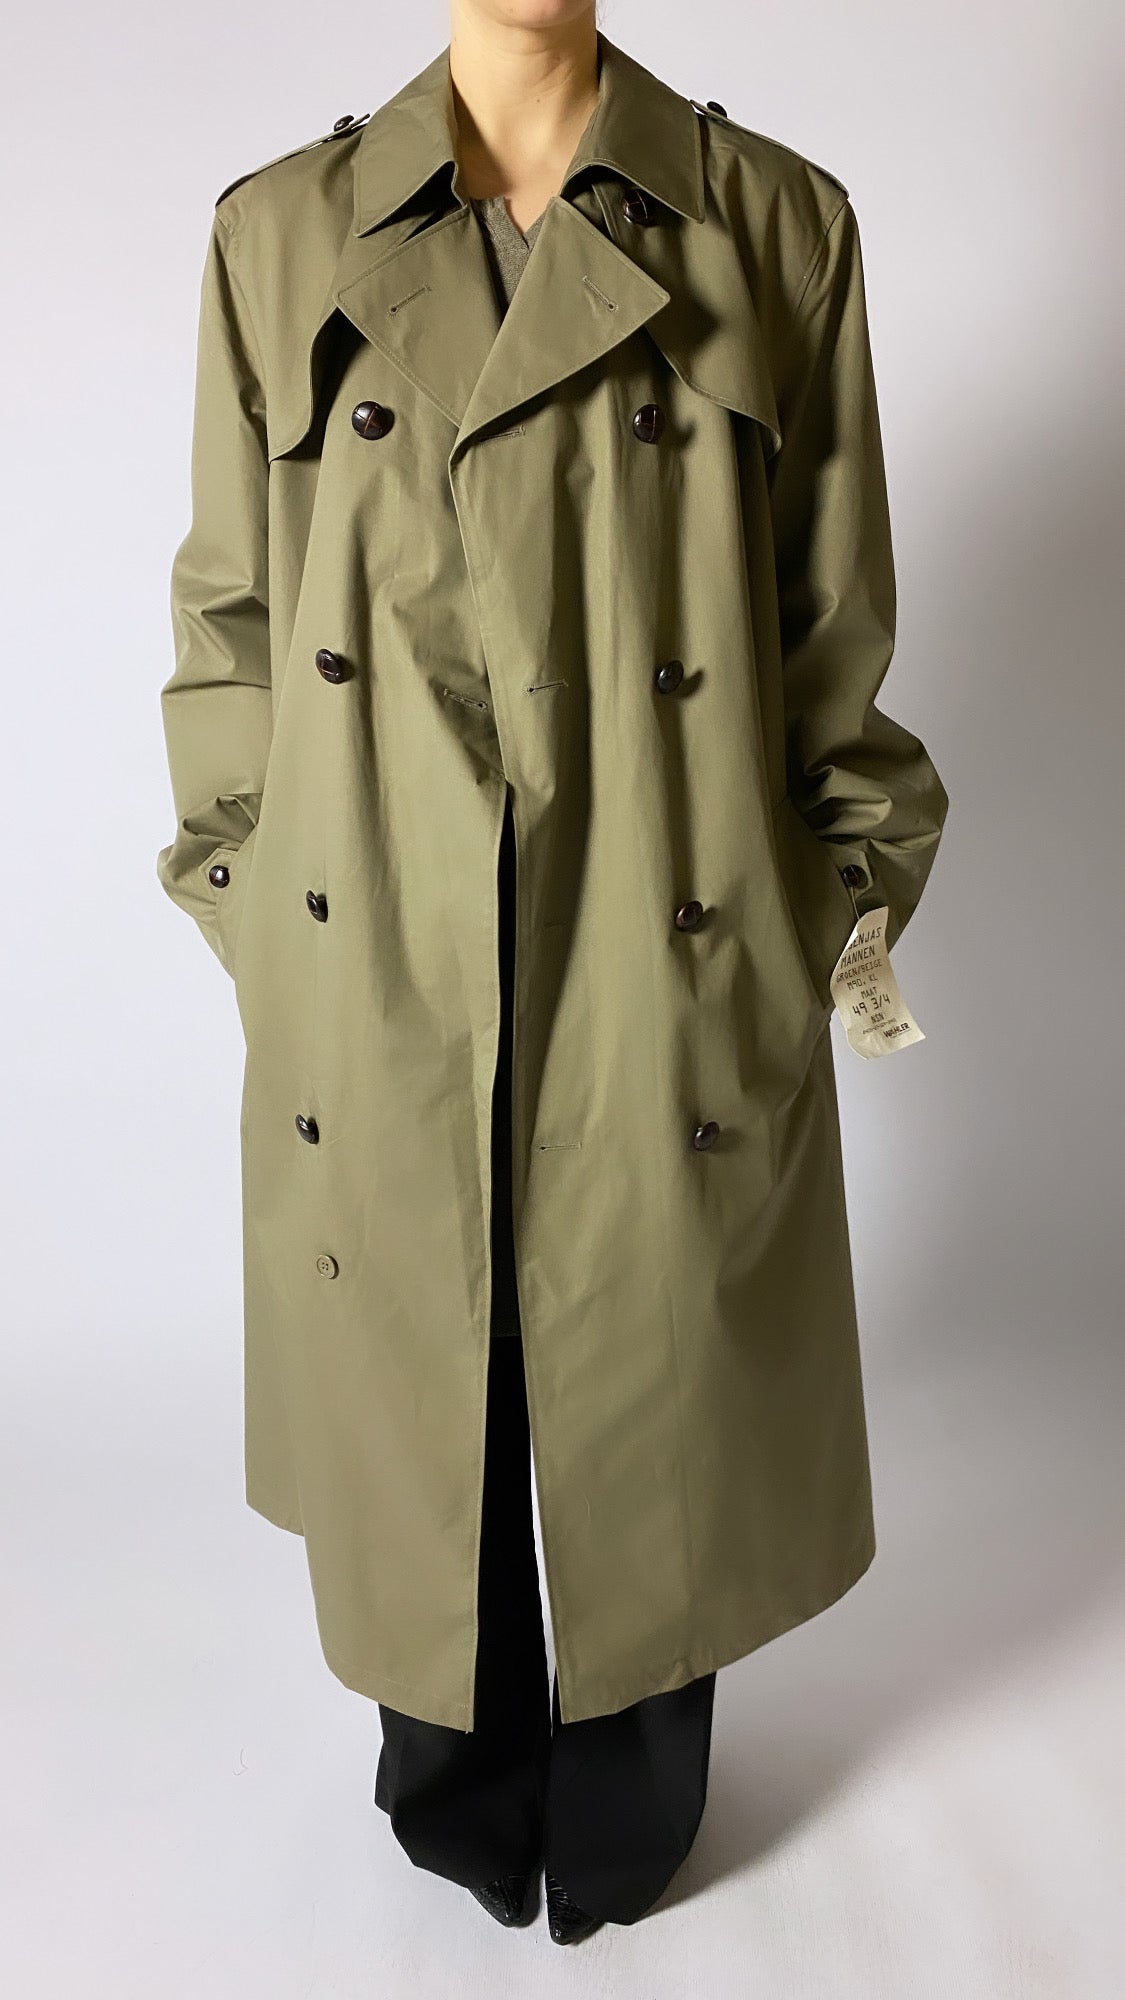 Deadstock trench coat green beige